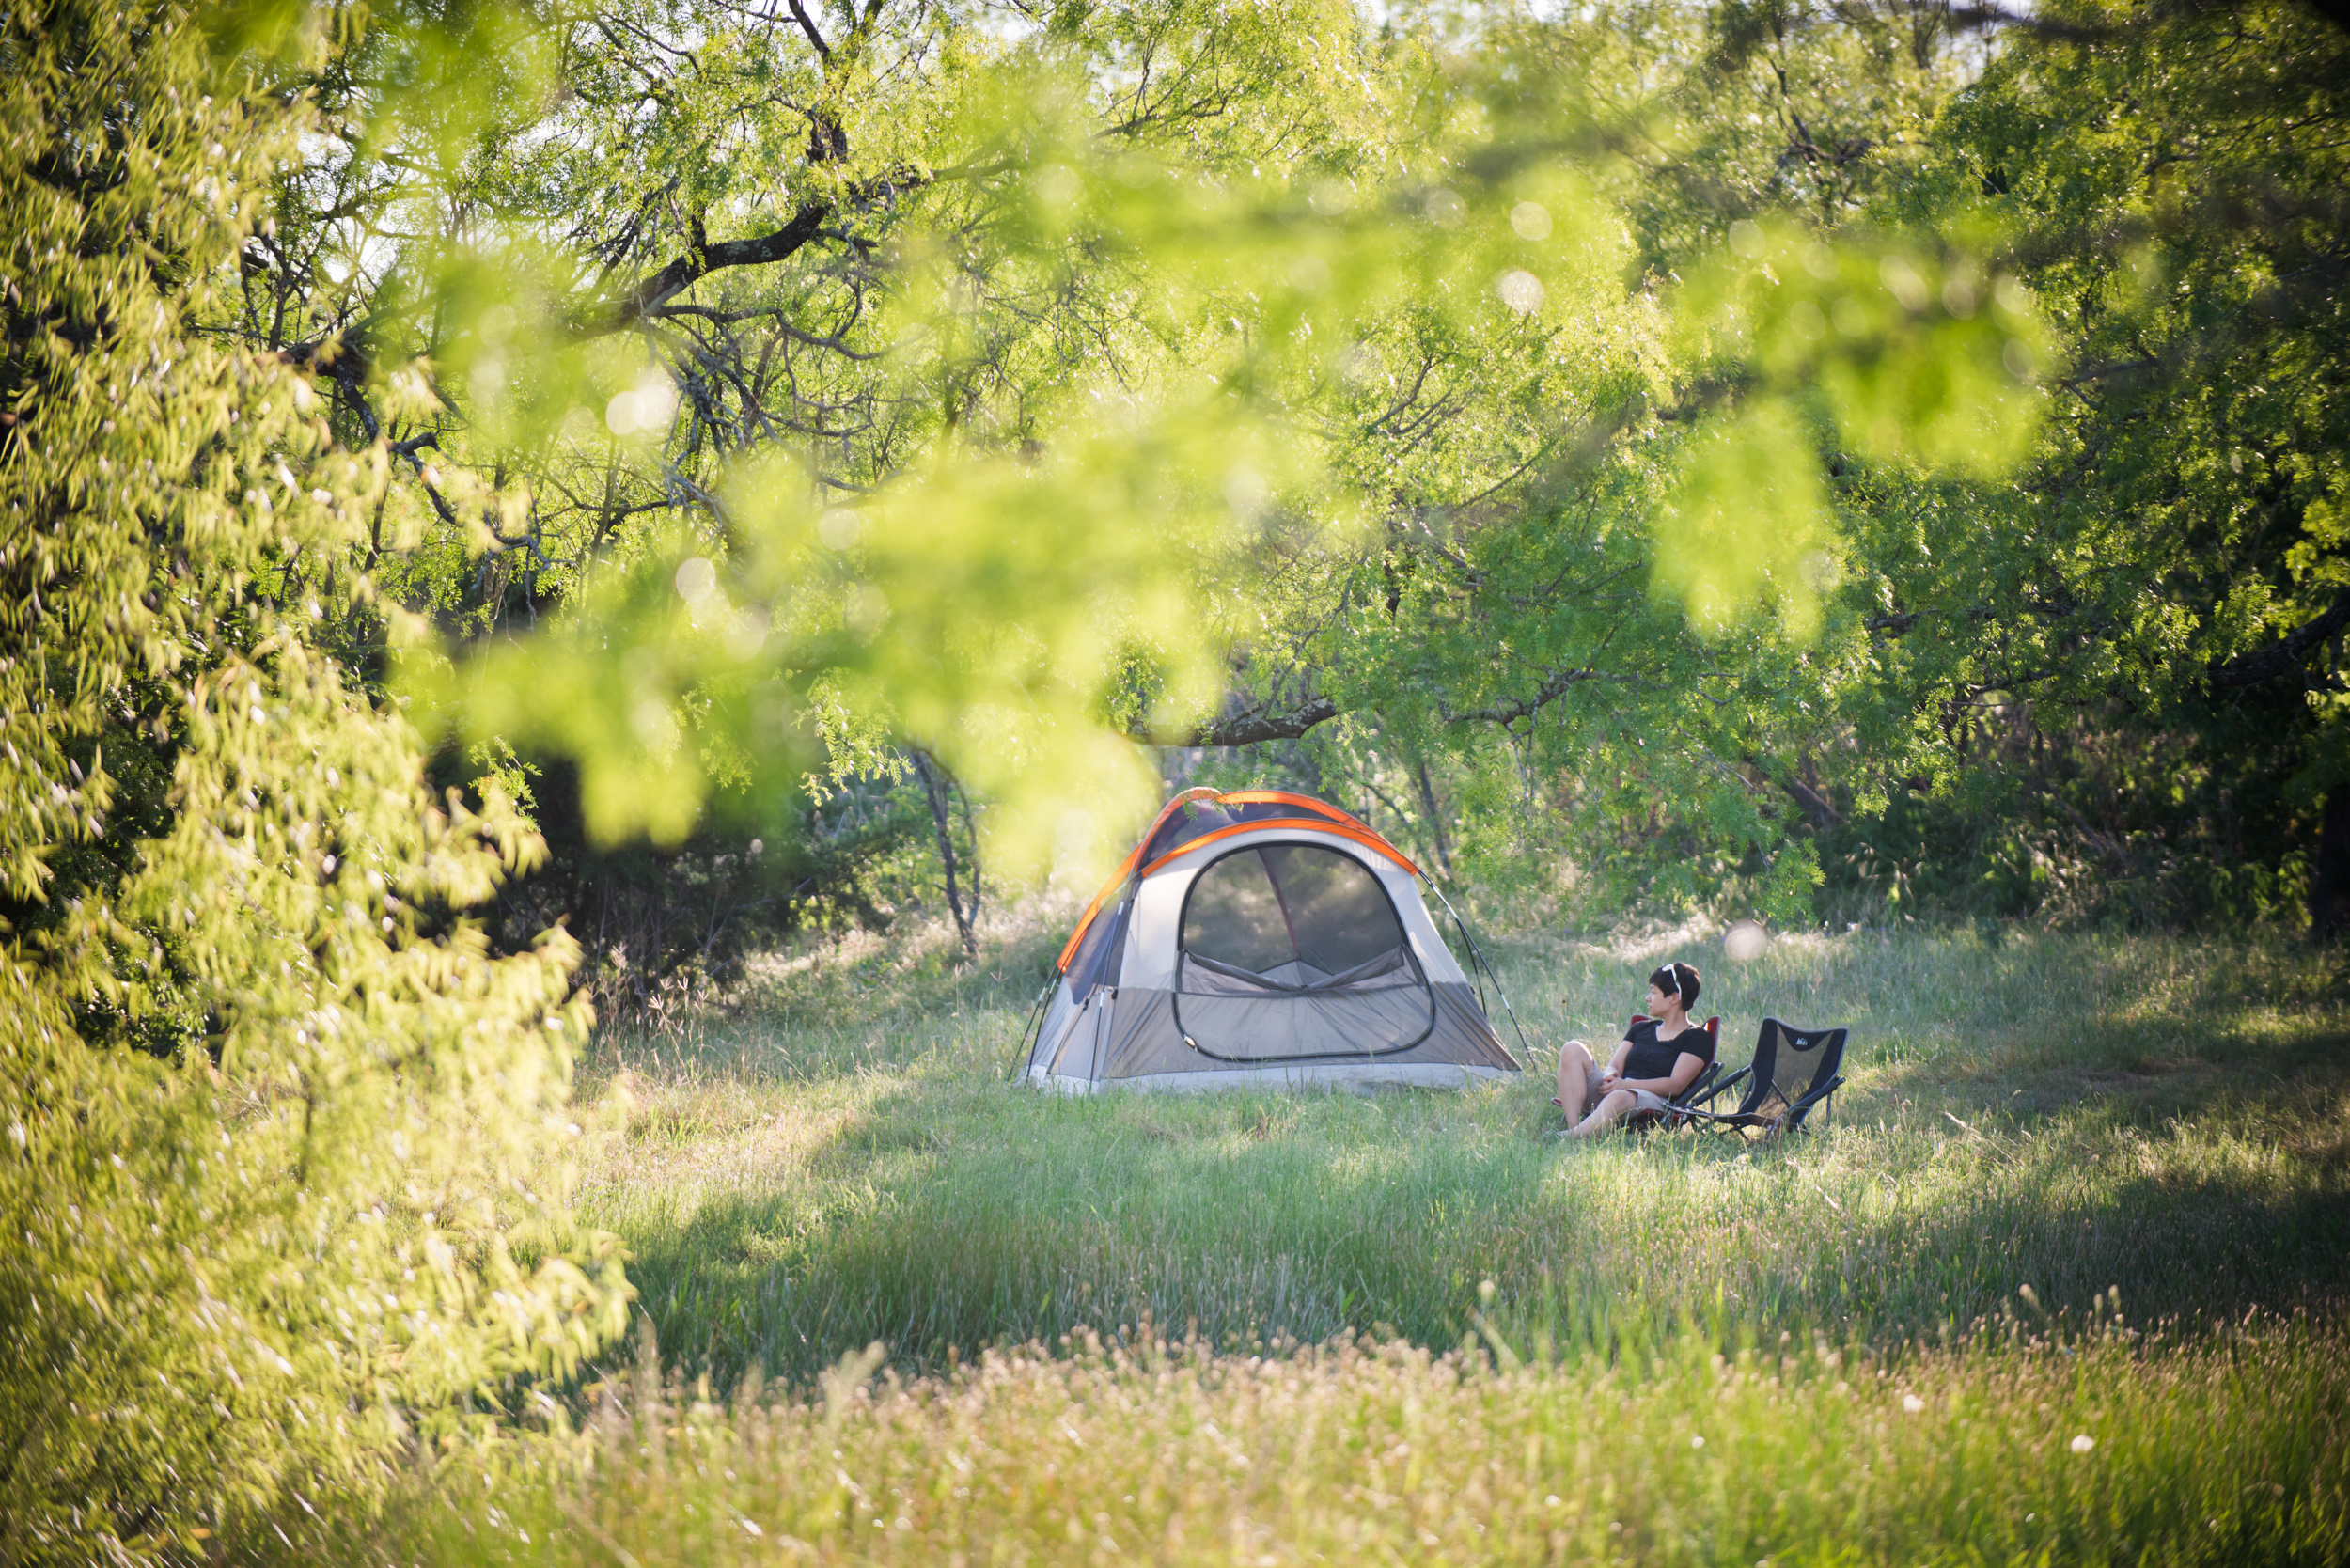 Hipcamp offre un sacco di campeggio a basso costo e RV opzioni in Texas che sono praticamente liberi